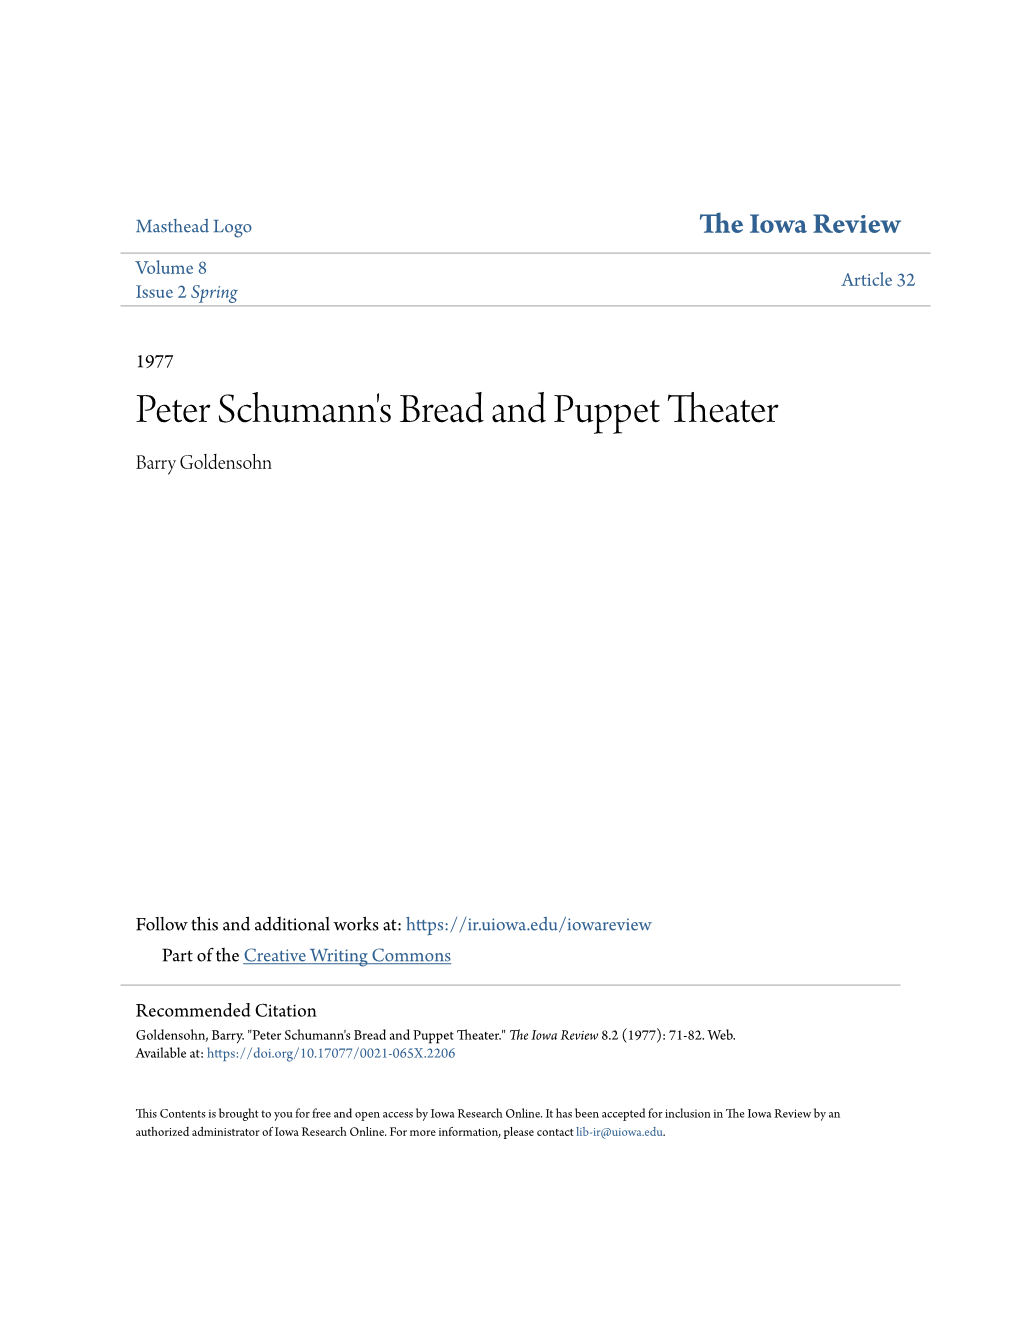 Peter Schumann's Bread and Puppet Theater Barry Goldensohn